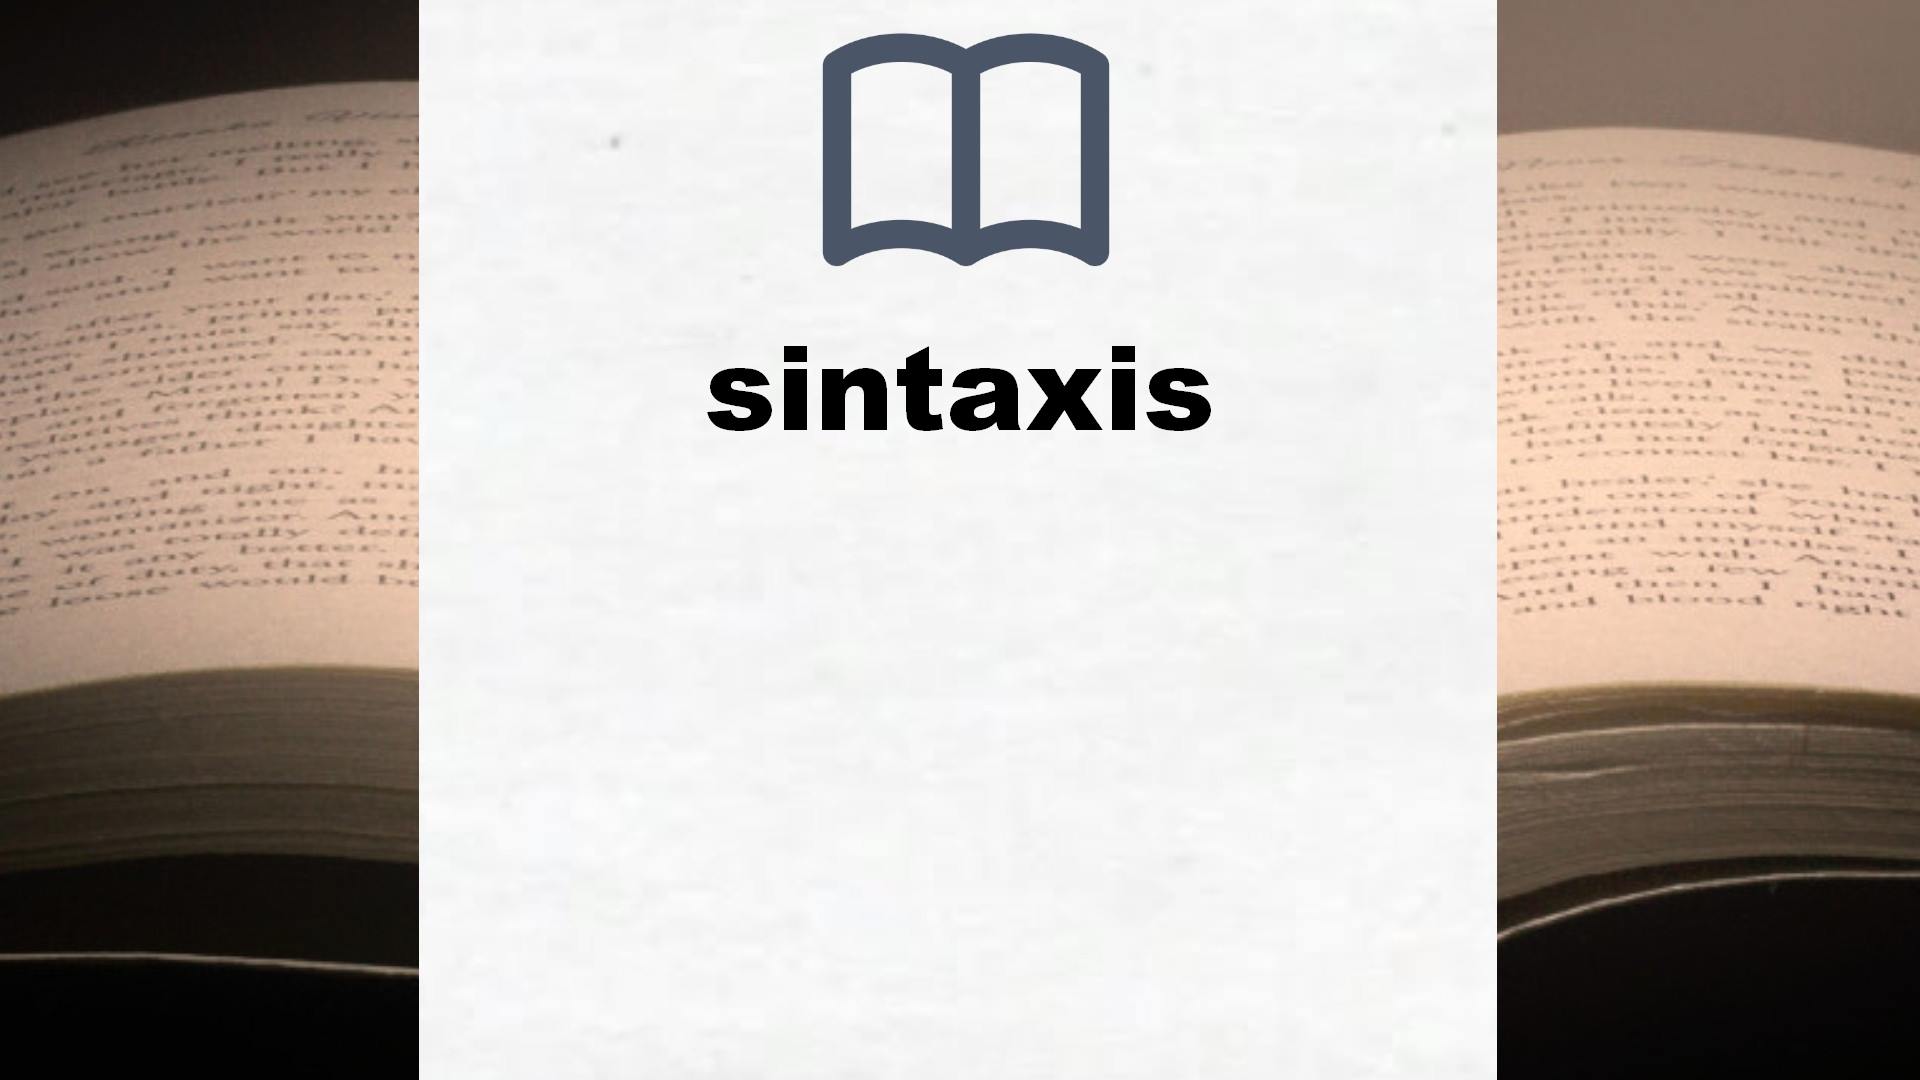 Libros sobre sintaxis